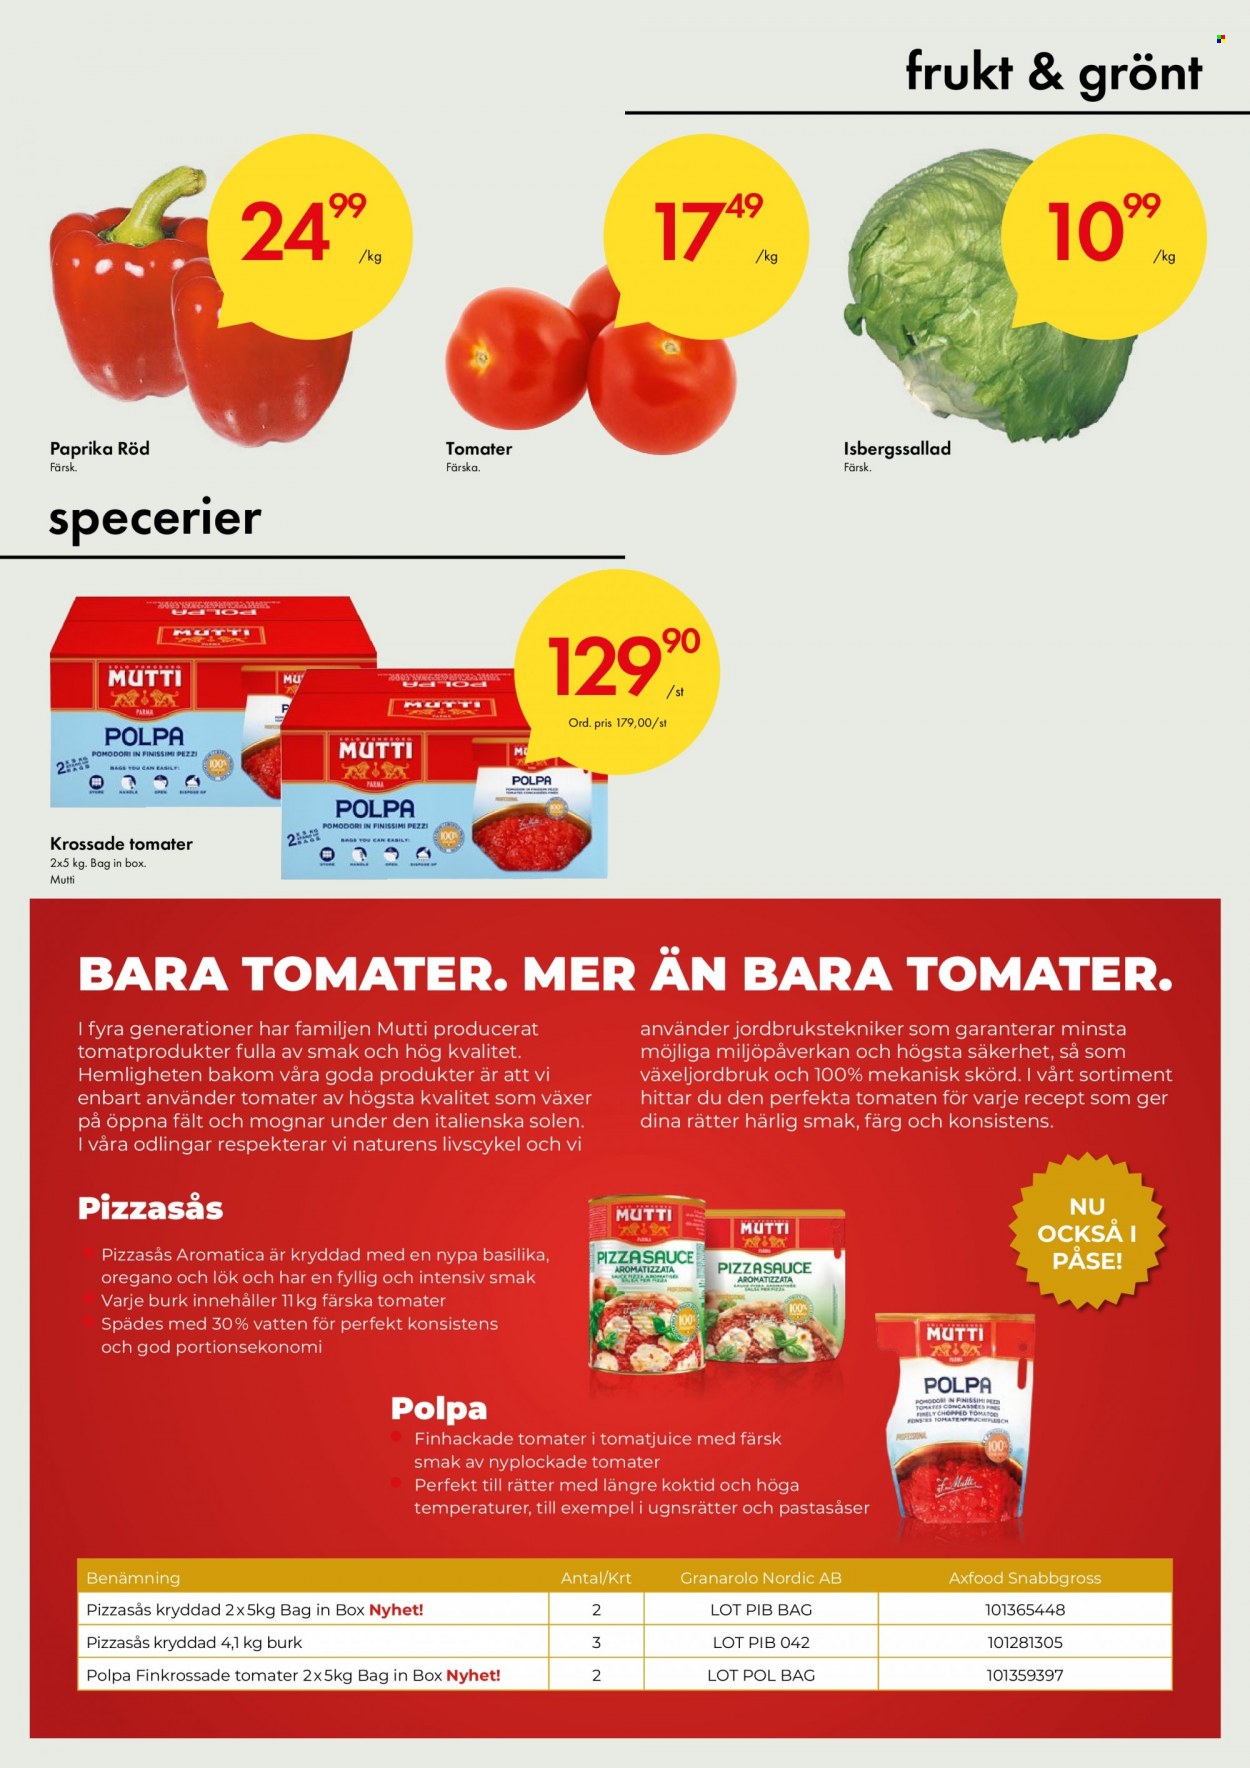 Axfood Snabbgross reklamblad - 20/6 2022 - 3/7 2022 - varor från reklamblad - tomater, paprika, lök, krossade tomater, Mutti, basilika. Sida 7.